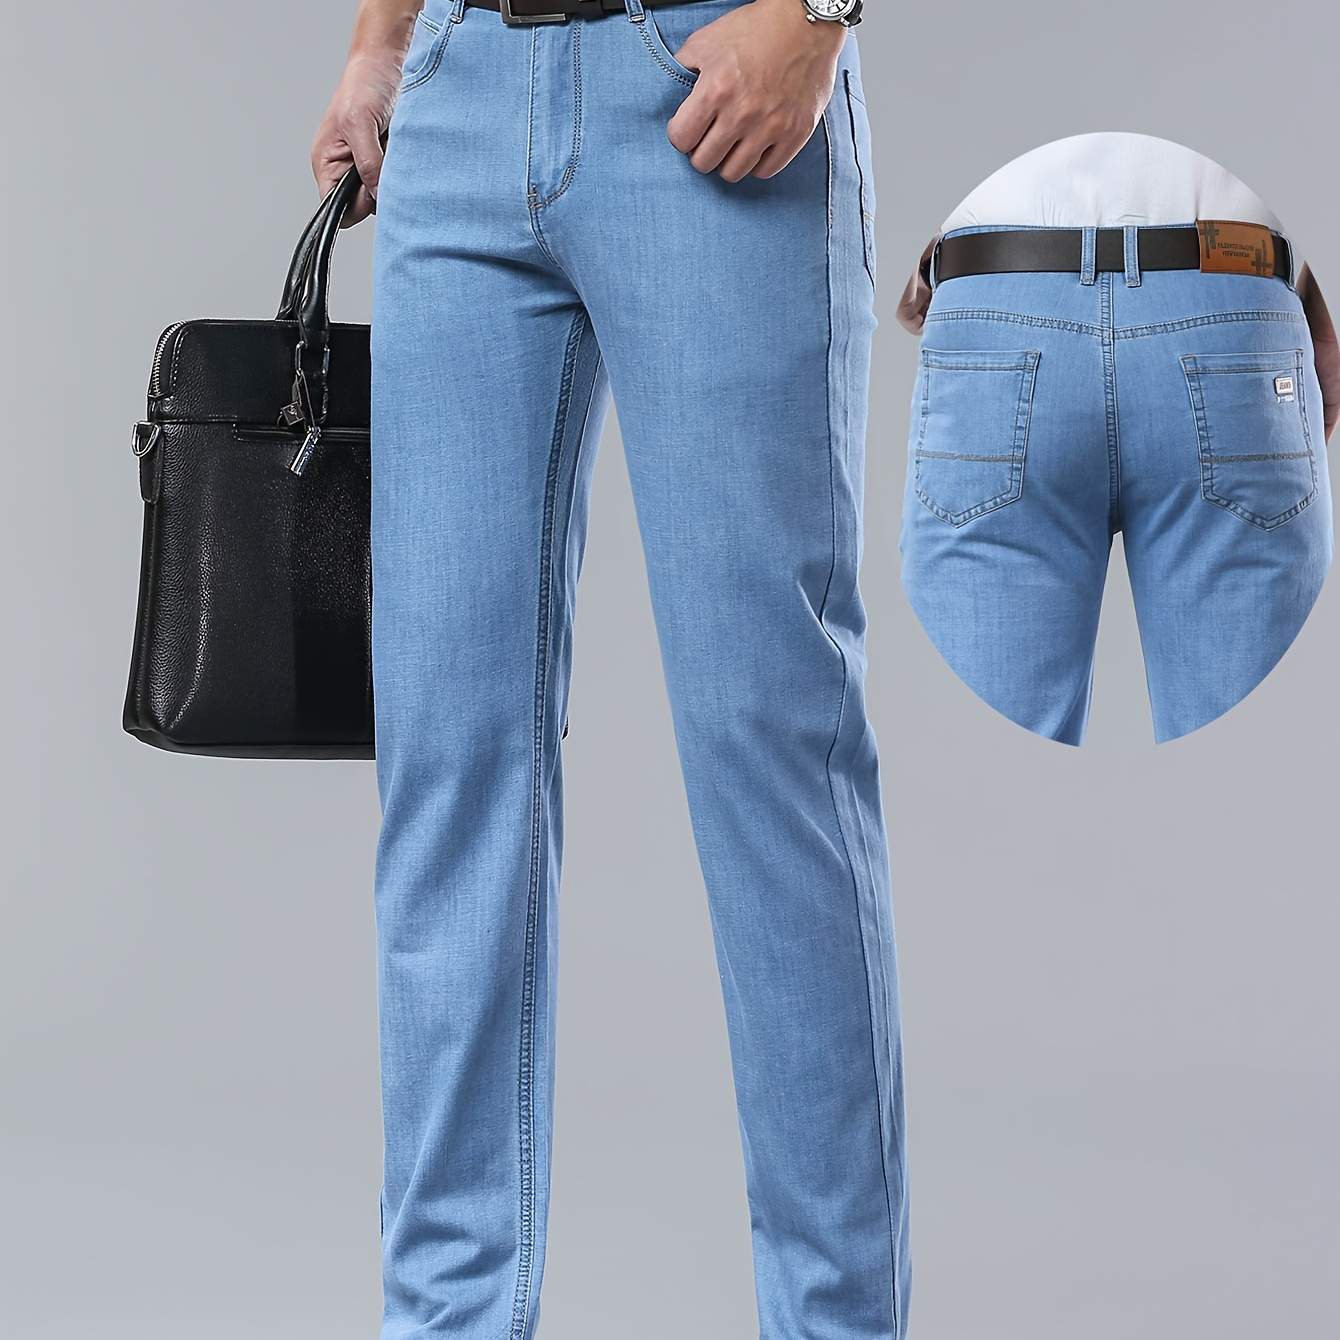 

Pantalon en denim délavé uni pour homme avec poches, jean slim en coton mélangé formel pour les activités de plein air en été